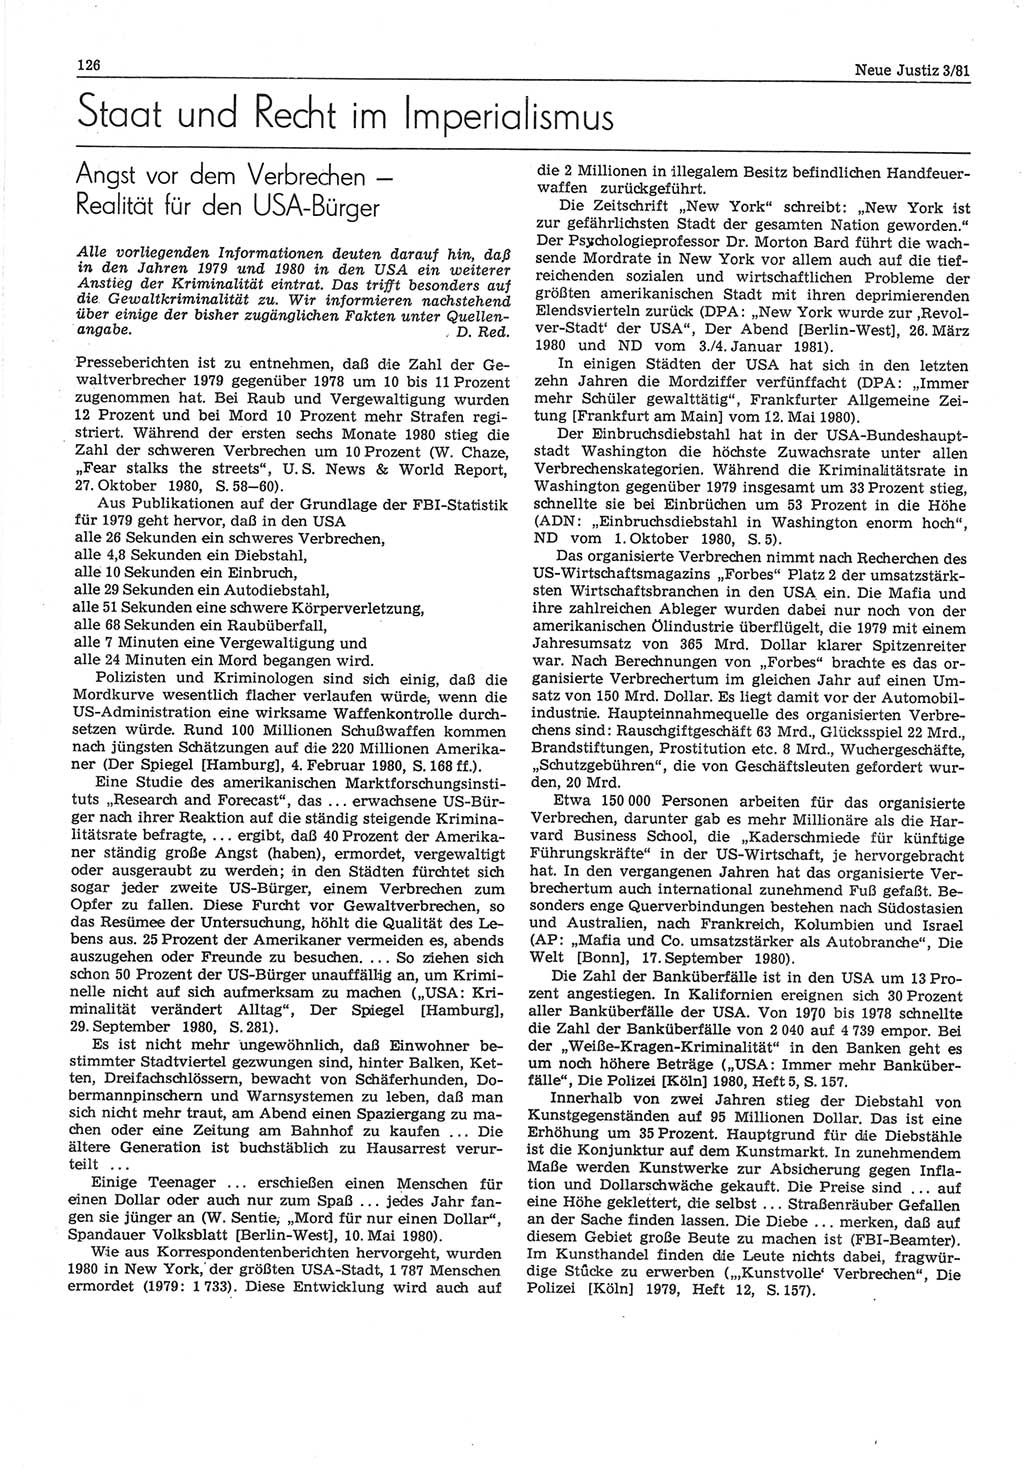 Neue Justiz (NJ), Zeitschrift für sozialistisches Recht und Gesetzlichkeit [Deutsche Demokratische Republik (DDR)], 35. Jahrgang 1981, Seite 126 (NJ DDR 1981, S. 126)